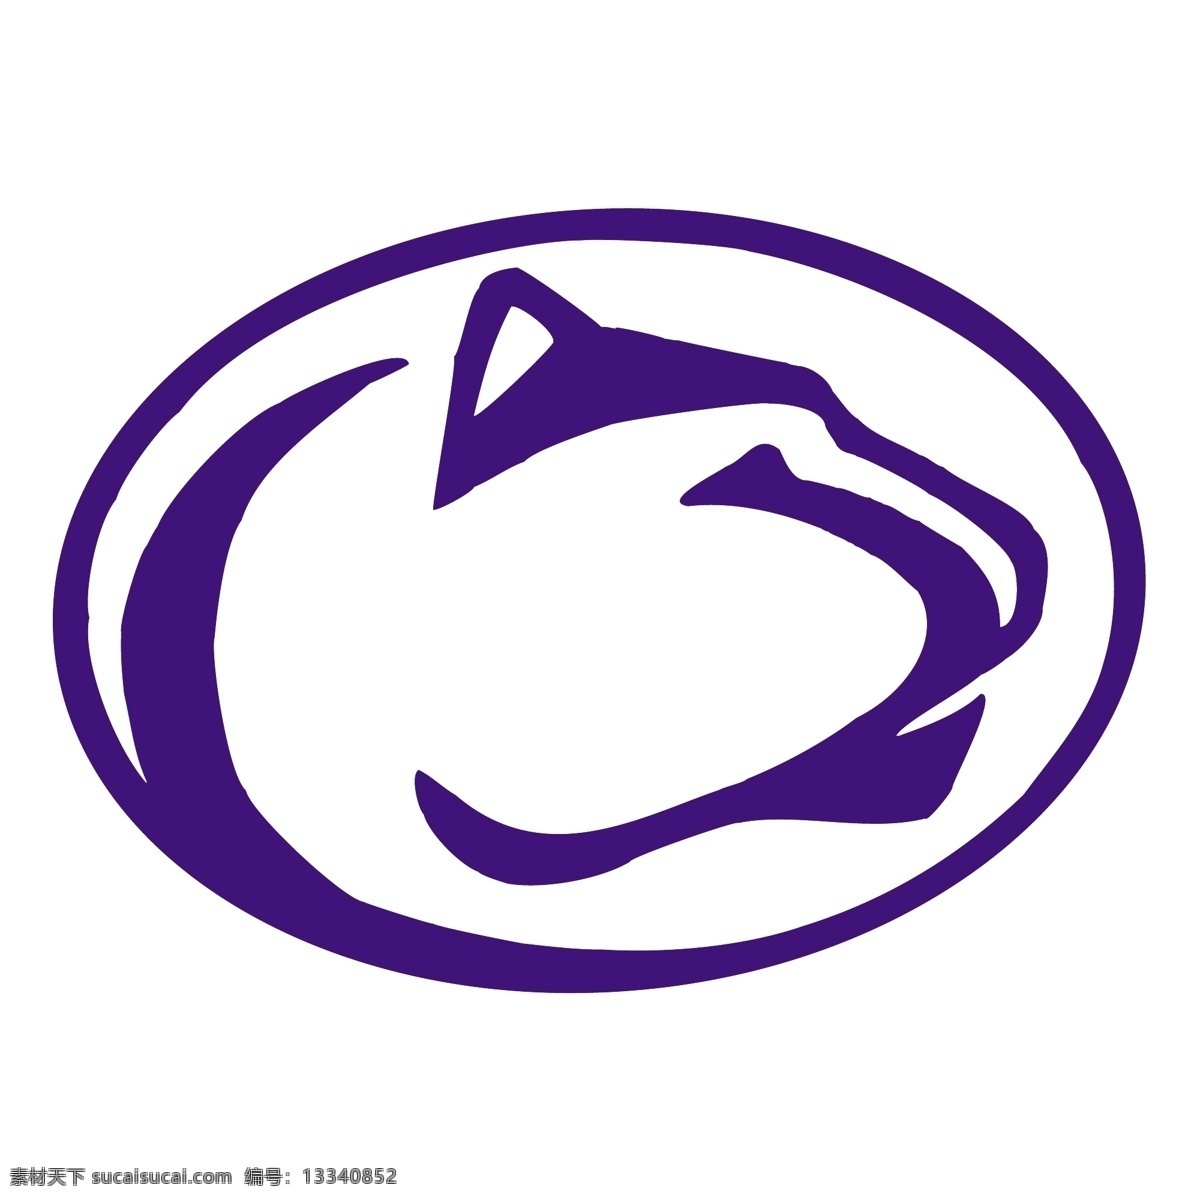 宾夕法尼亚 州立 大学 狮子 标识 公司 免费 品牌 品牌标识 商标 矢量标志下载 免费矢量标识 矢量 psd源文件 logo设计